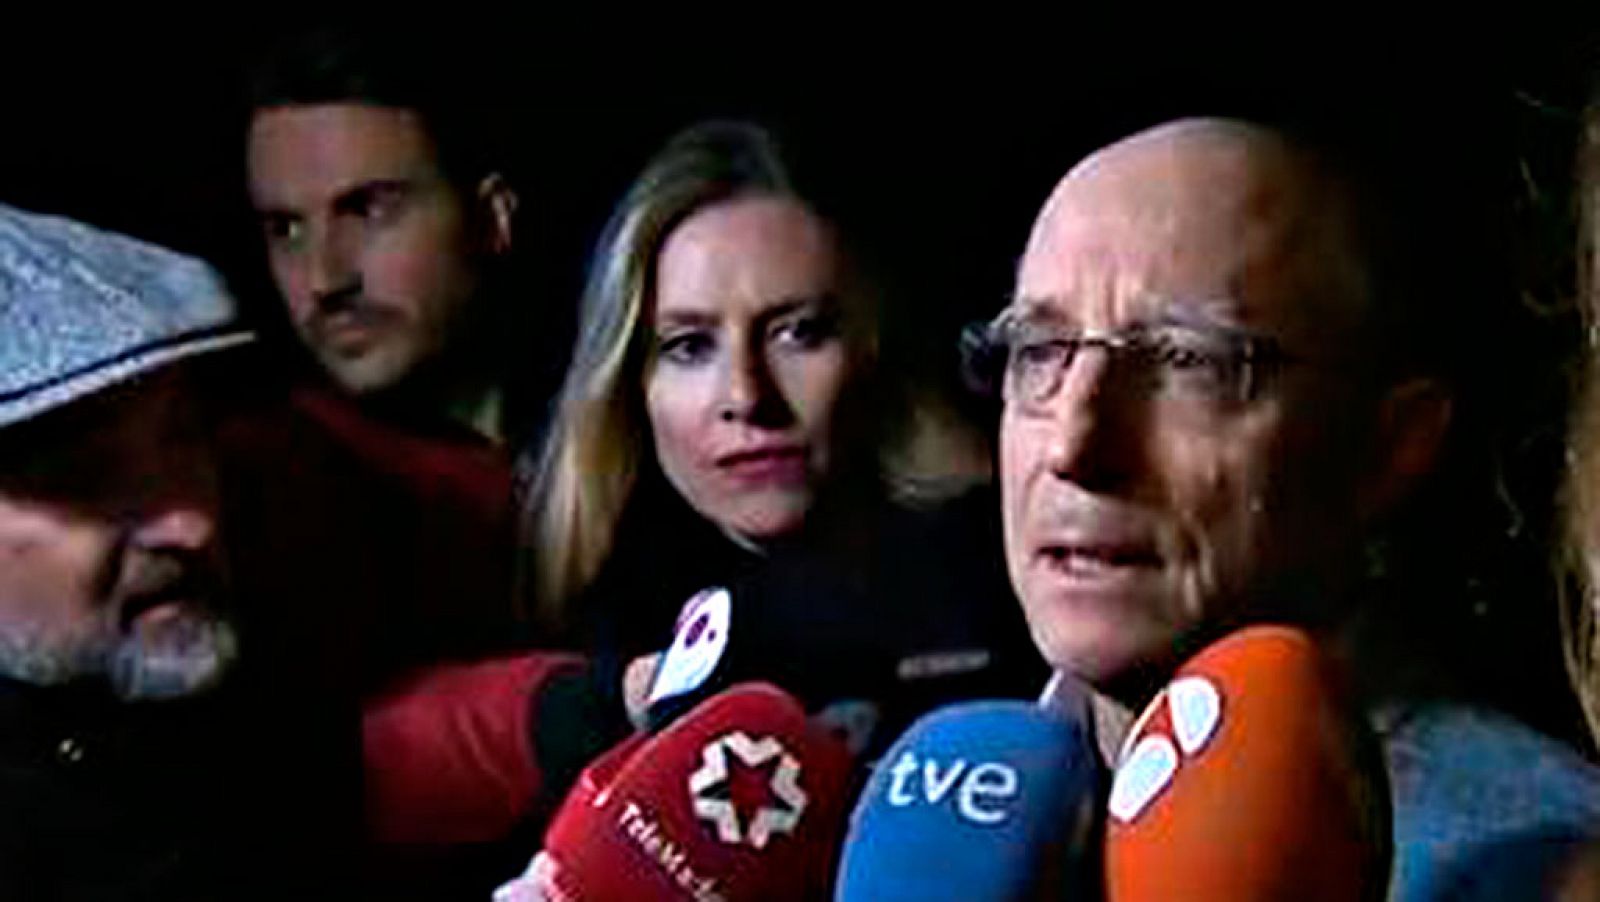 Ángel Hernández, en libertad: "A mi mujer no le va a llegar la eutanasia, que sea para los demás" - RTVE.es